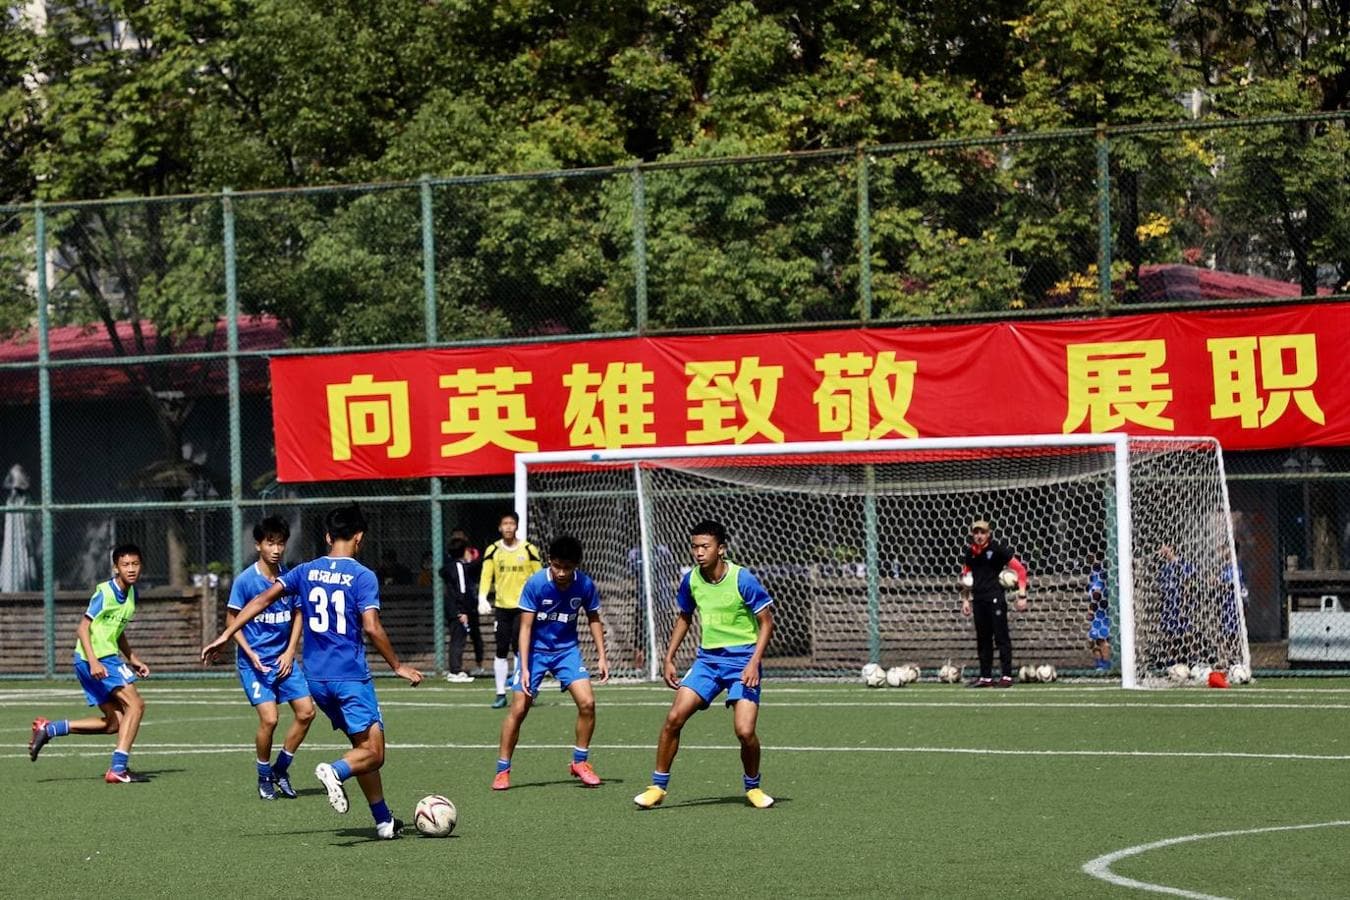 En la ciudad de Wuhan hay dos equipos de fútbol, el Shangwen Tres Ciudades y el Zall, gracias a su enorme afición futbolística. 